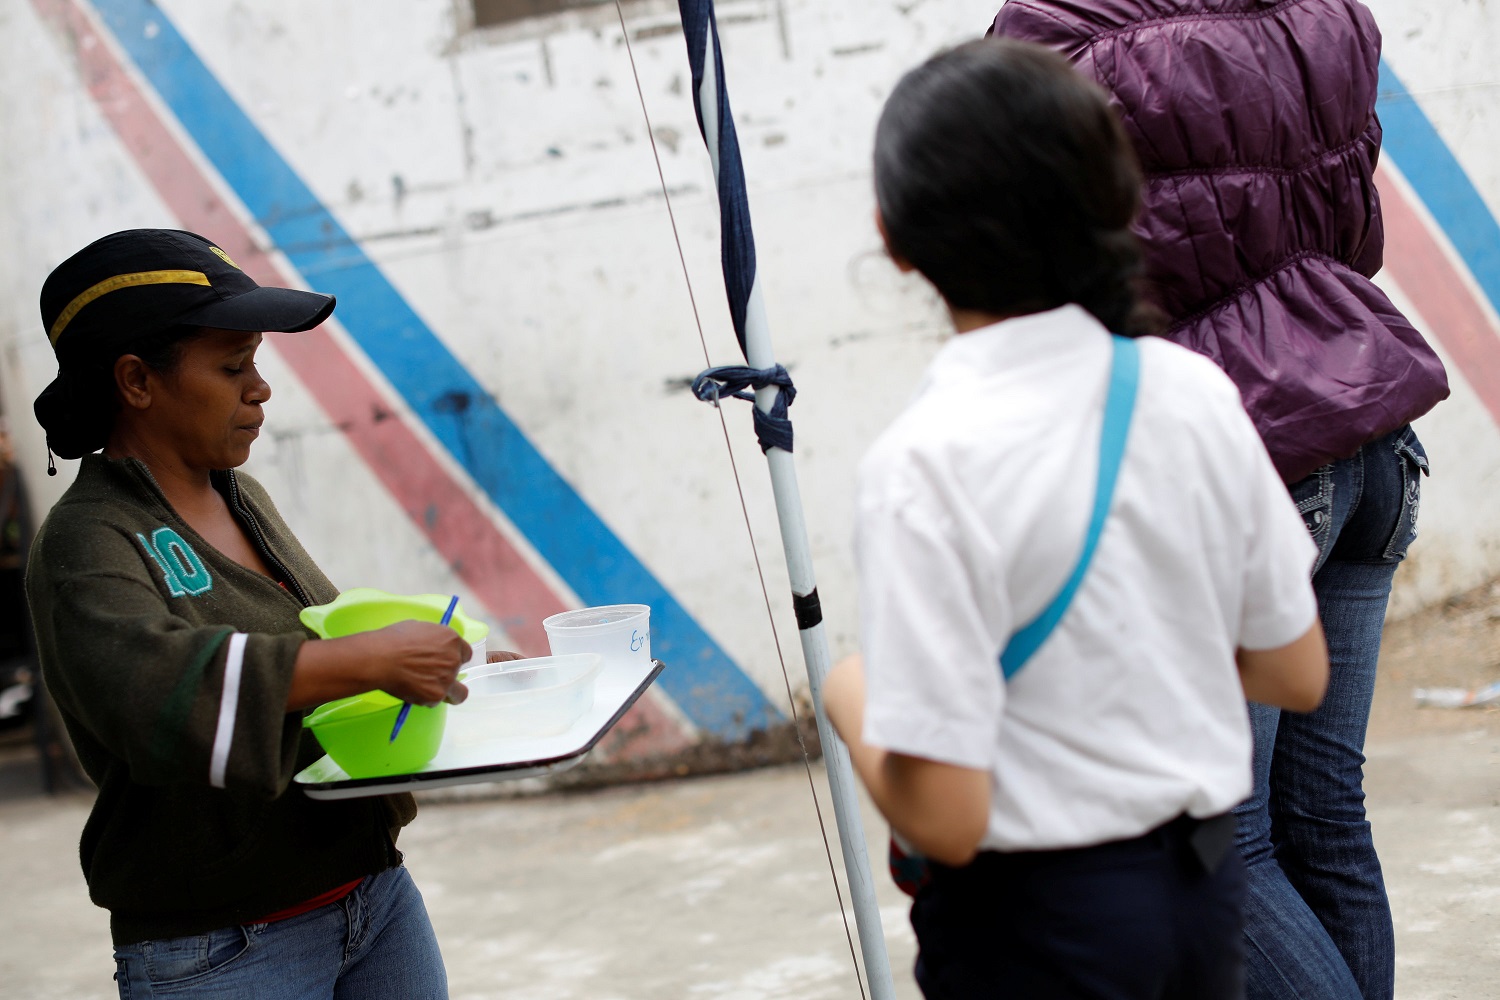 Un voluntario de la oposición que trabaja como voluntarios recolecta contenedores de plástico para servir la comida en un comedor para niños, en el barrio La Vega de Caracas, Venezuela, el 23 de mayo de 2017. Foto tomada el 23 de mayo de 2017. REUTERS / Carlos Garcia Rawlins